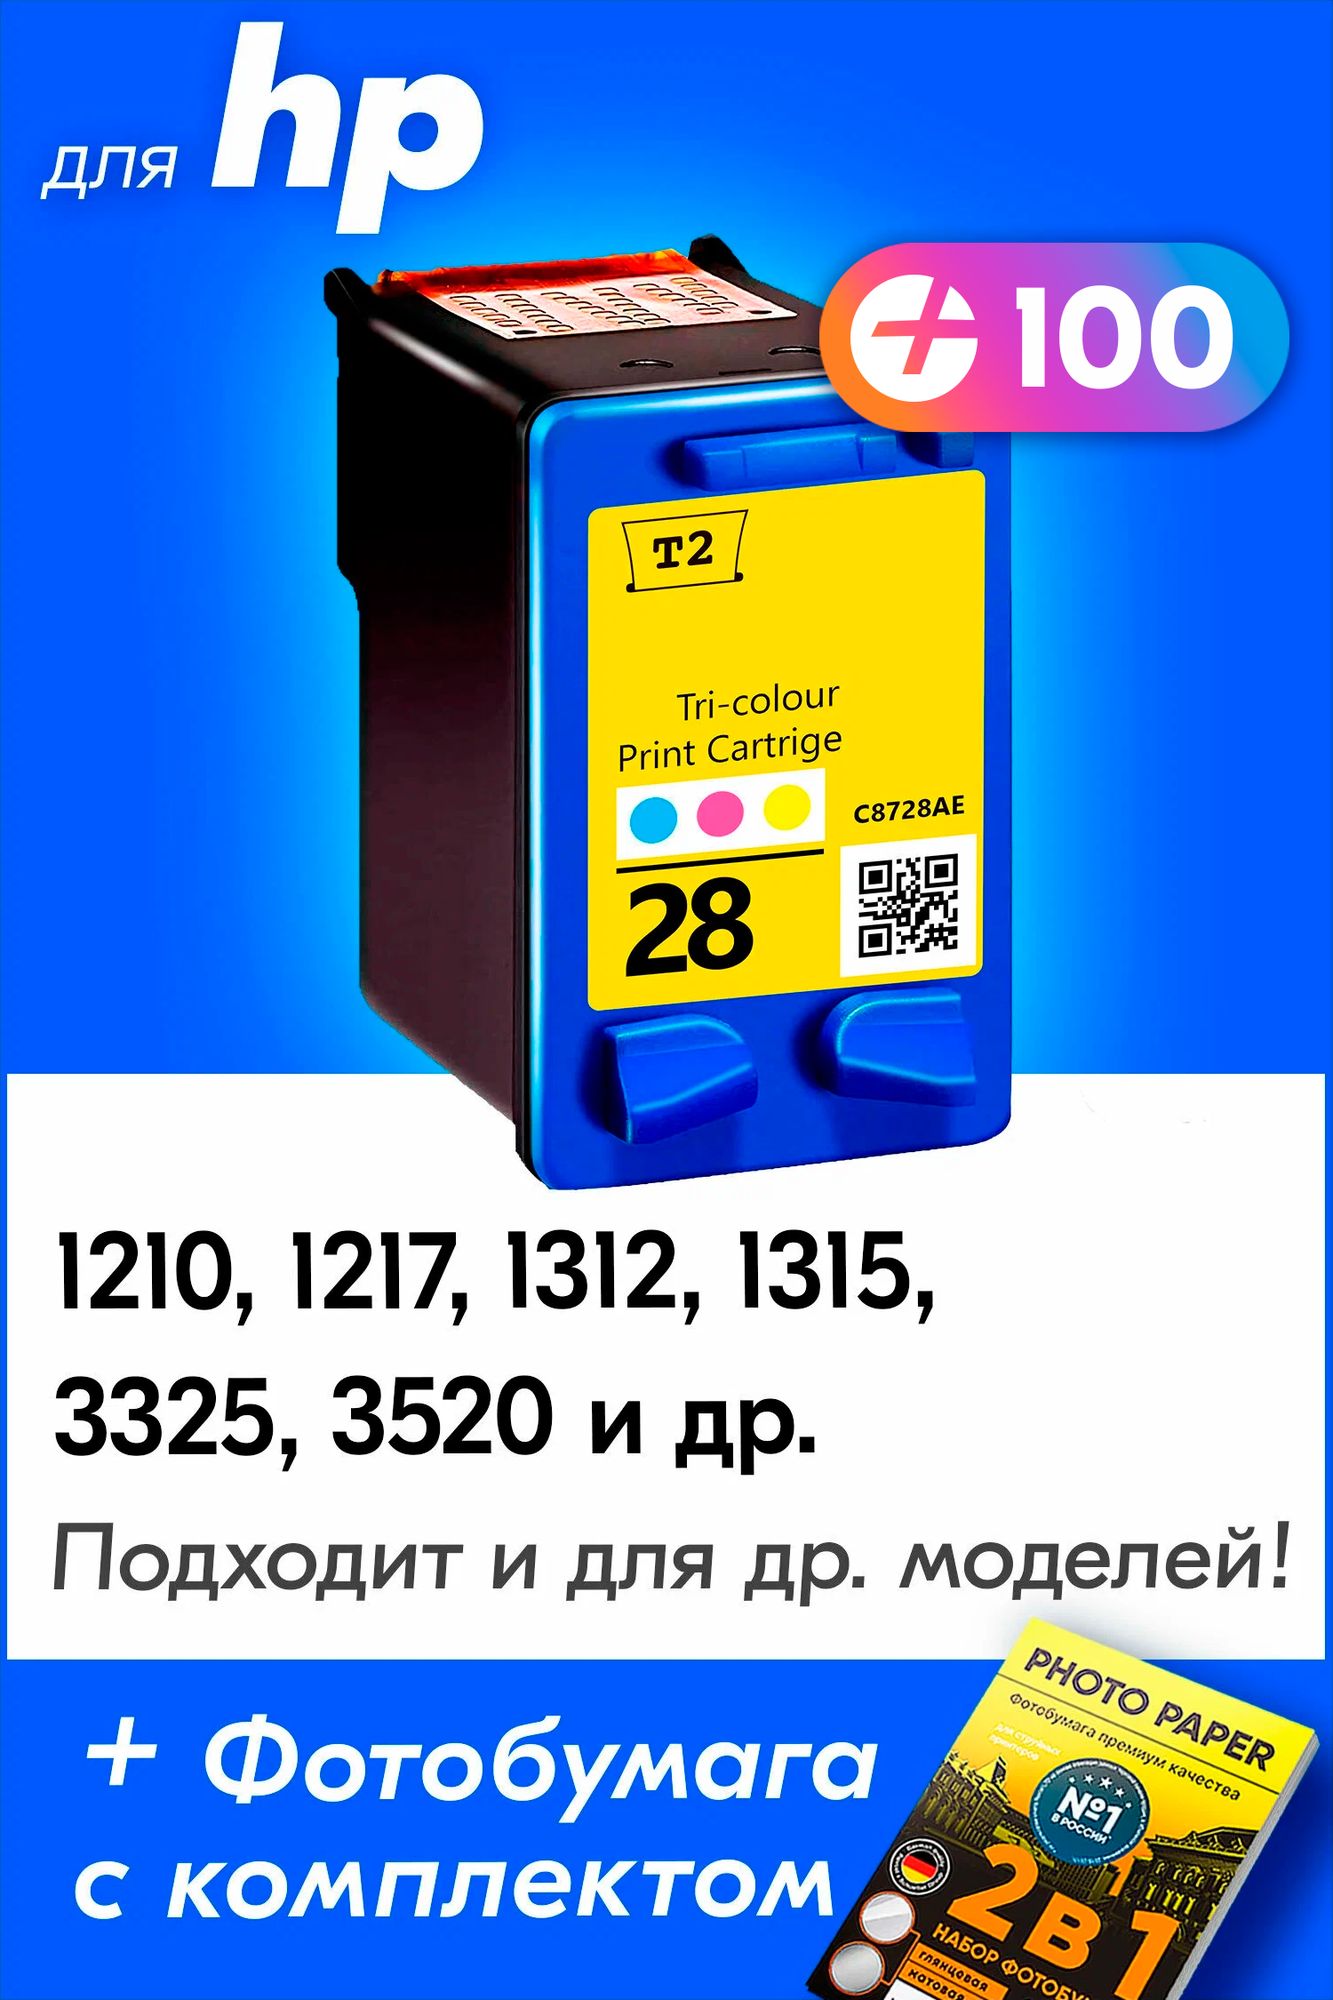 Картридж для HP 28 XL, HP DeskJet 3520, PSC 1315, 1217, 1210 и др. с чернилами (с краской) для струйного принтера, Цветной (Color), 1 шт.